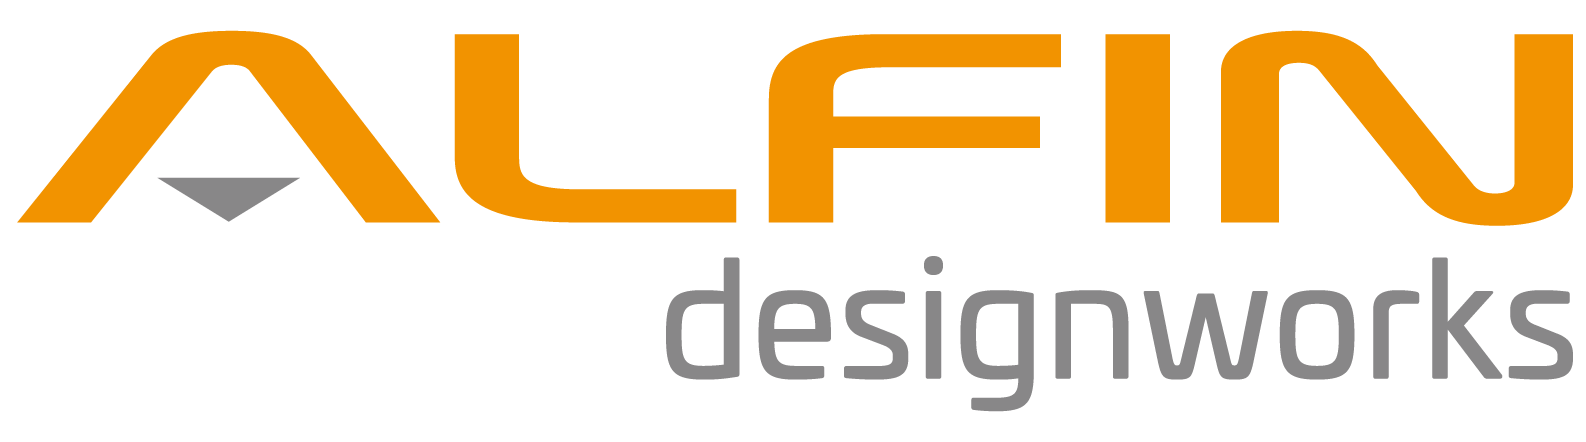 ALFIN designworks